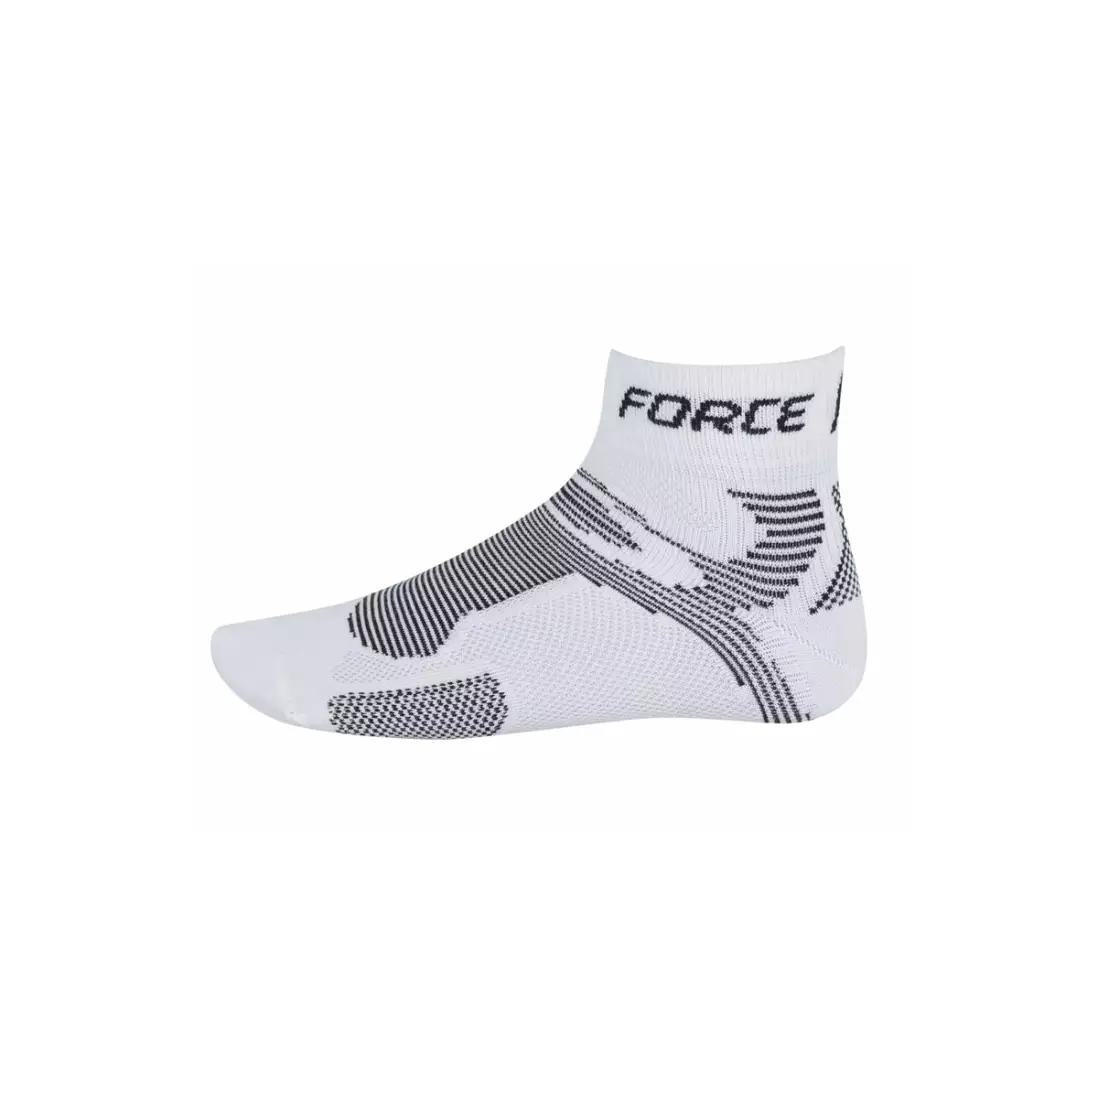 Sportovní ponožky FORCE 2 COOLMAX 901022 - bílé a černé